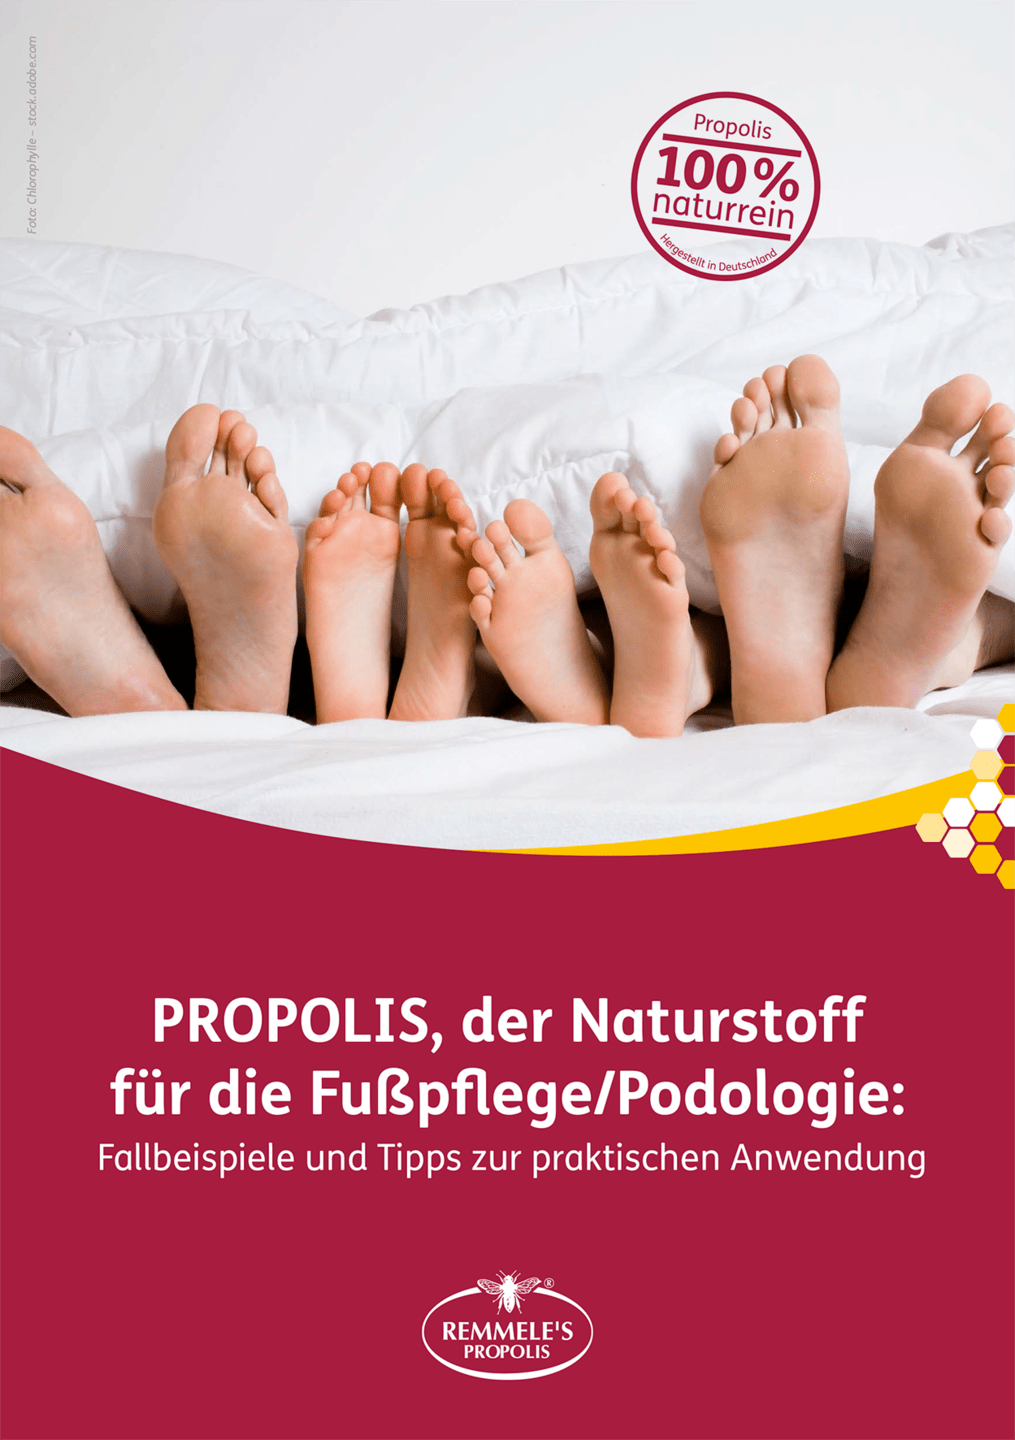 Remmele's Propolis - Broschüre "Der Naturstoff für die Fußpflege/Podologie"